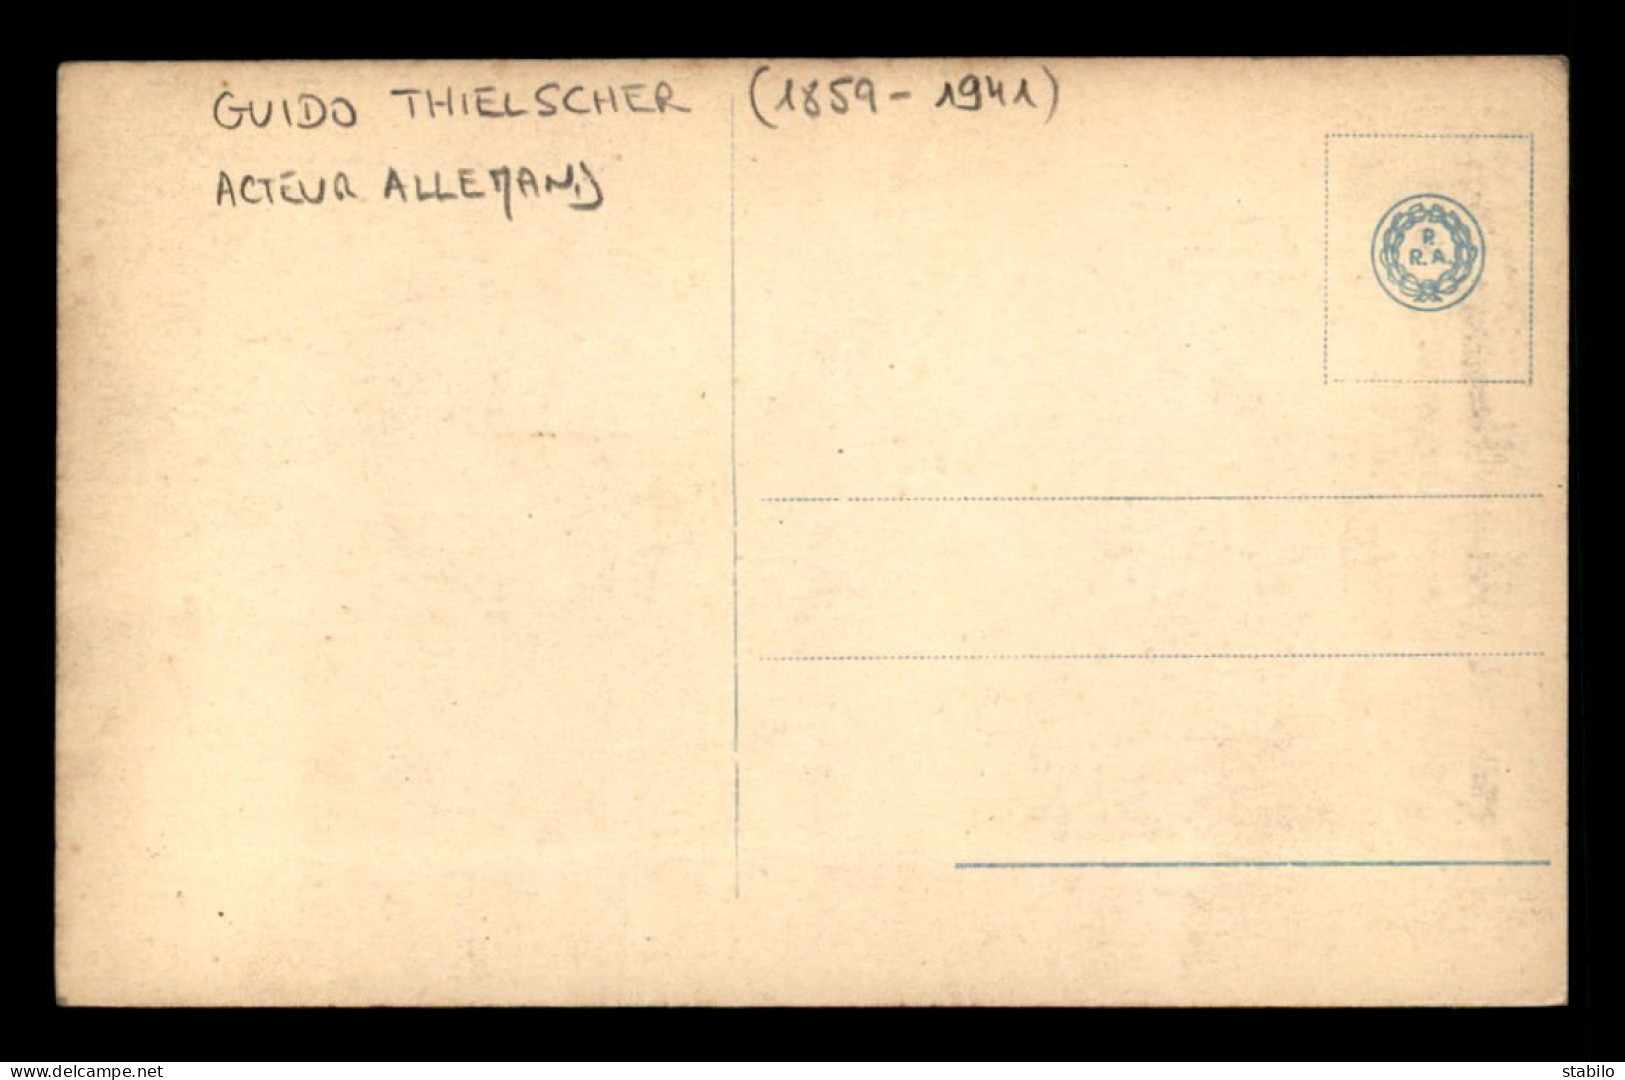 ARTISTES - GUIDO THIELSCHER (1859-1941) - ACTEUR ALLEMAND - Artistes